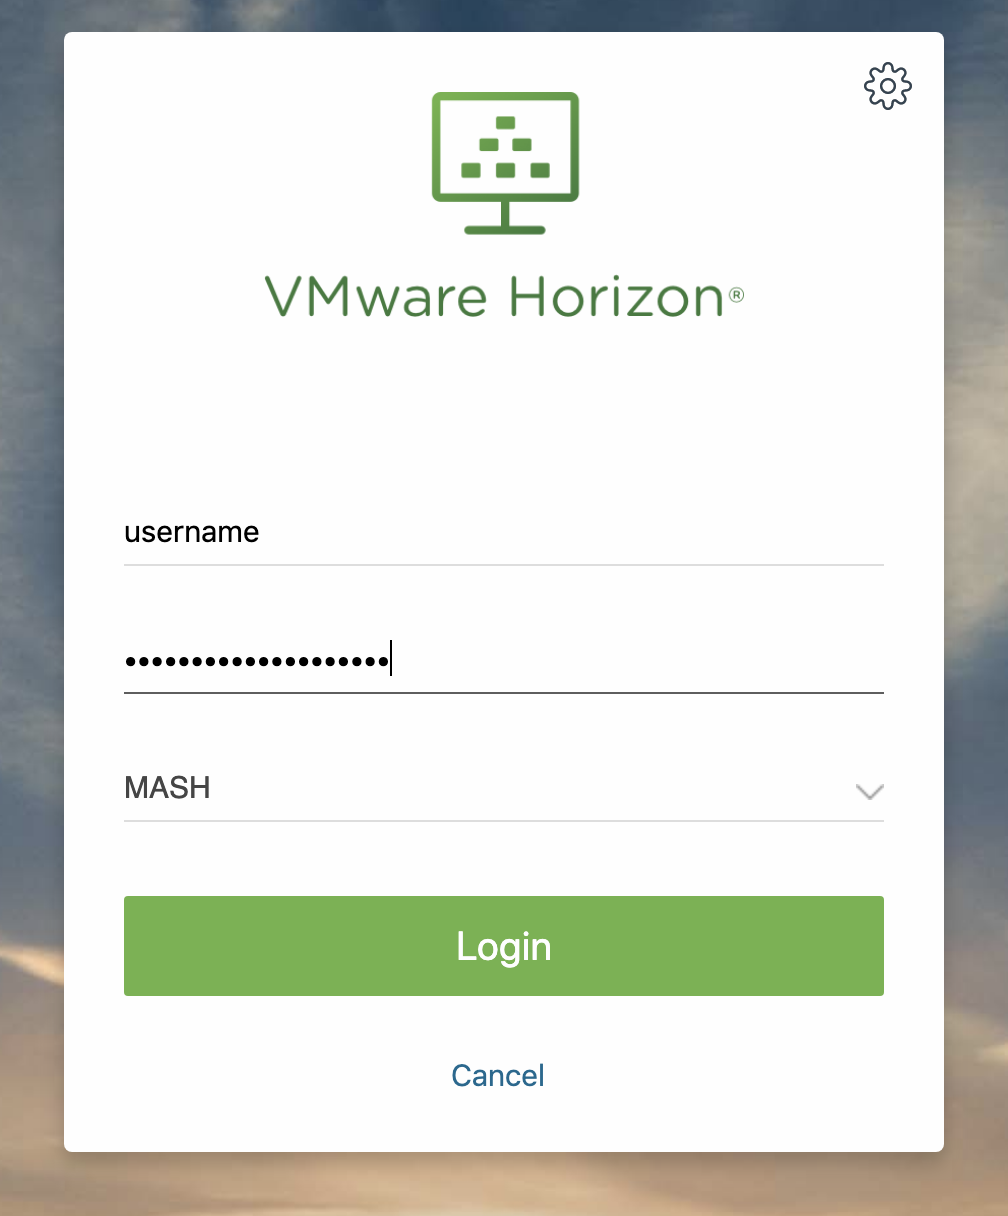 vmware horizon client macbook